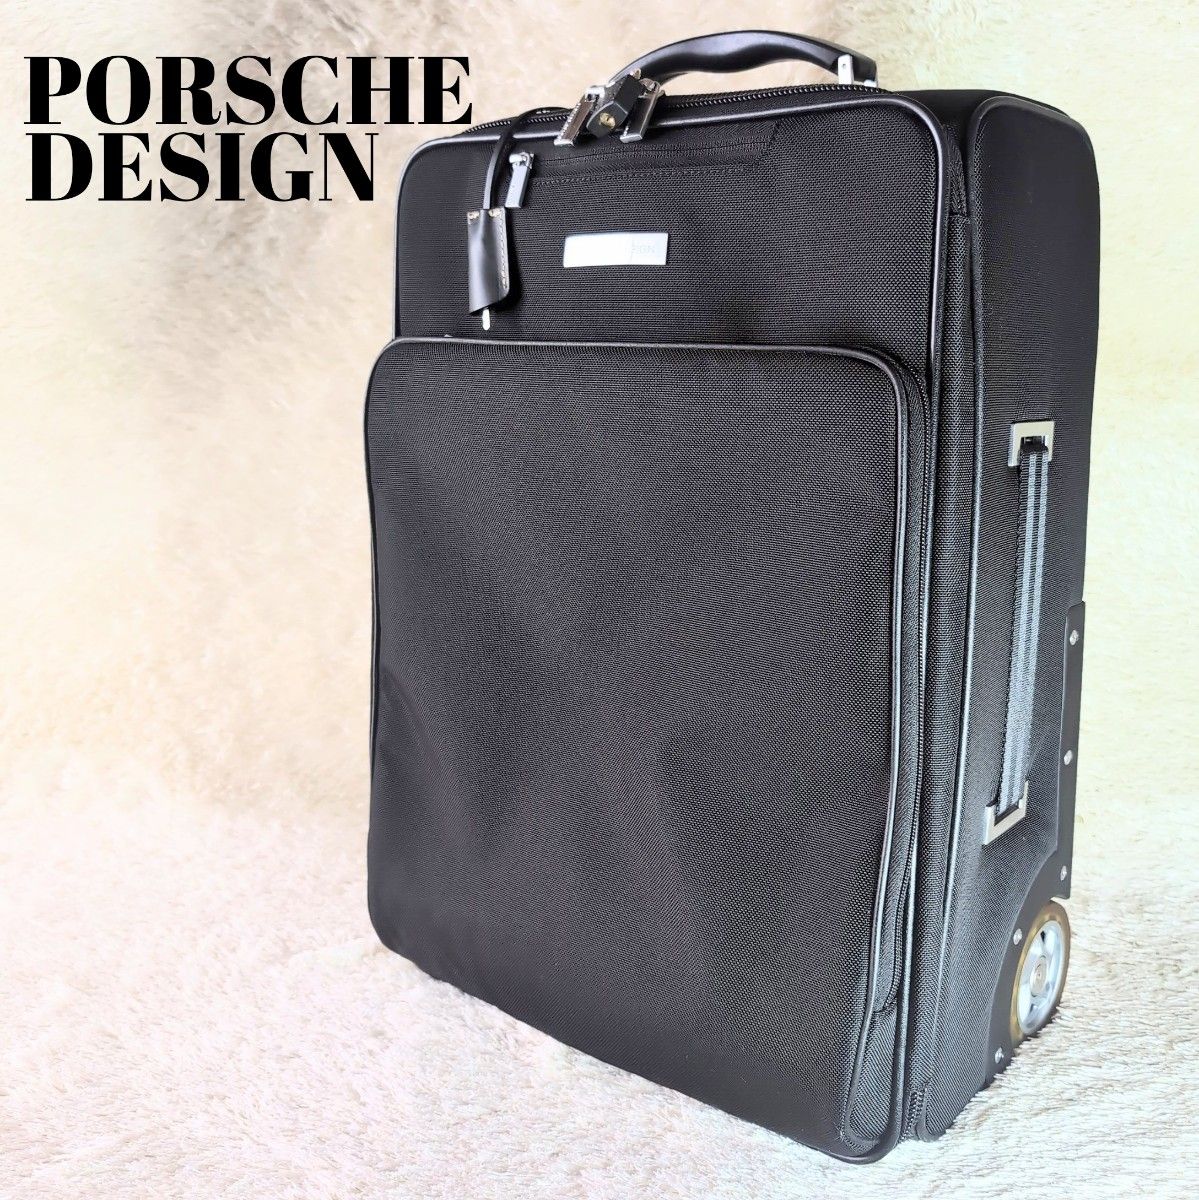 【傷有】 PORSCHE DESIGN キャリーケース キャリーバッグ ビジネスバッグ メンズ ポルシェデザイン ブラック